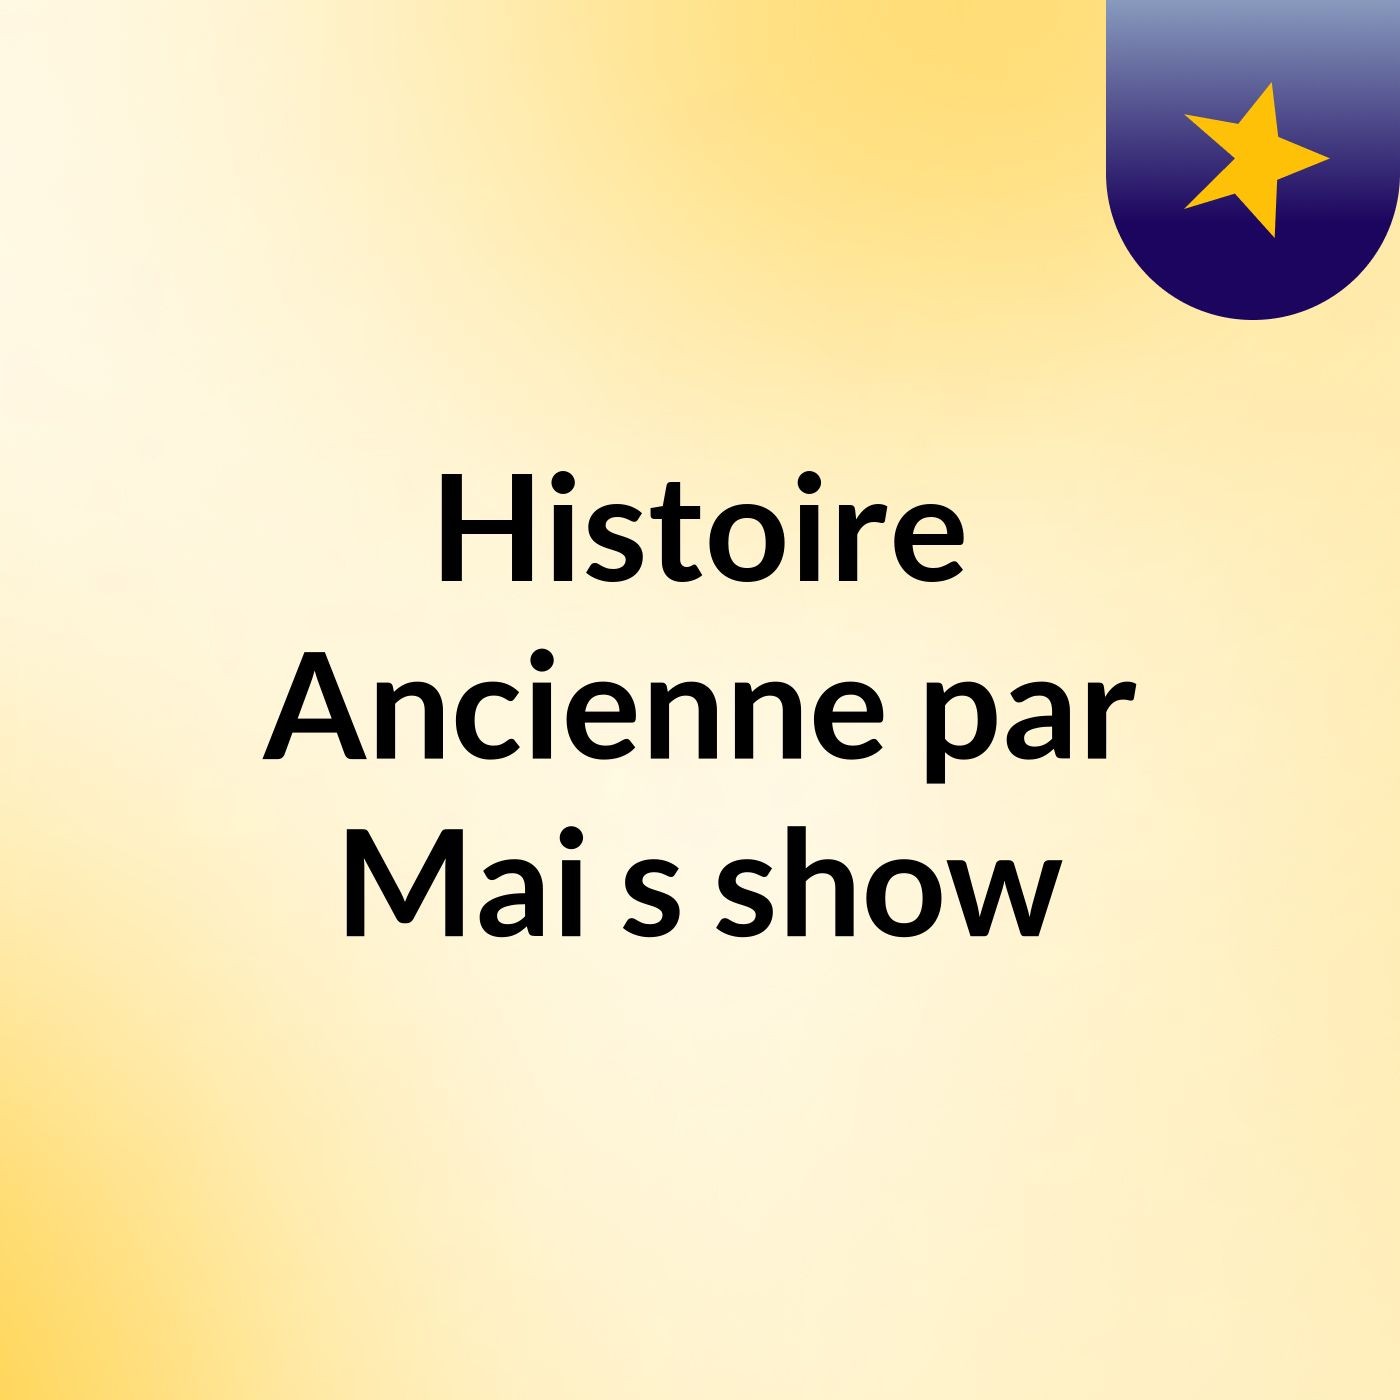 Histoire Ancienne par Mai's show